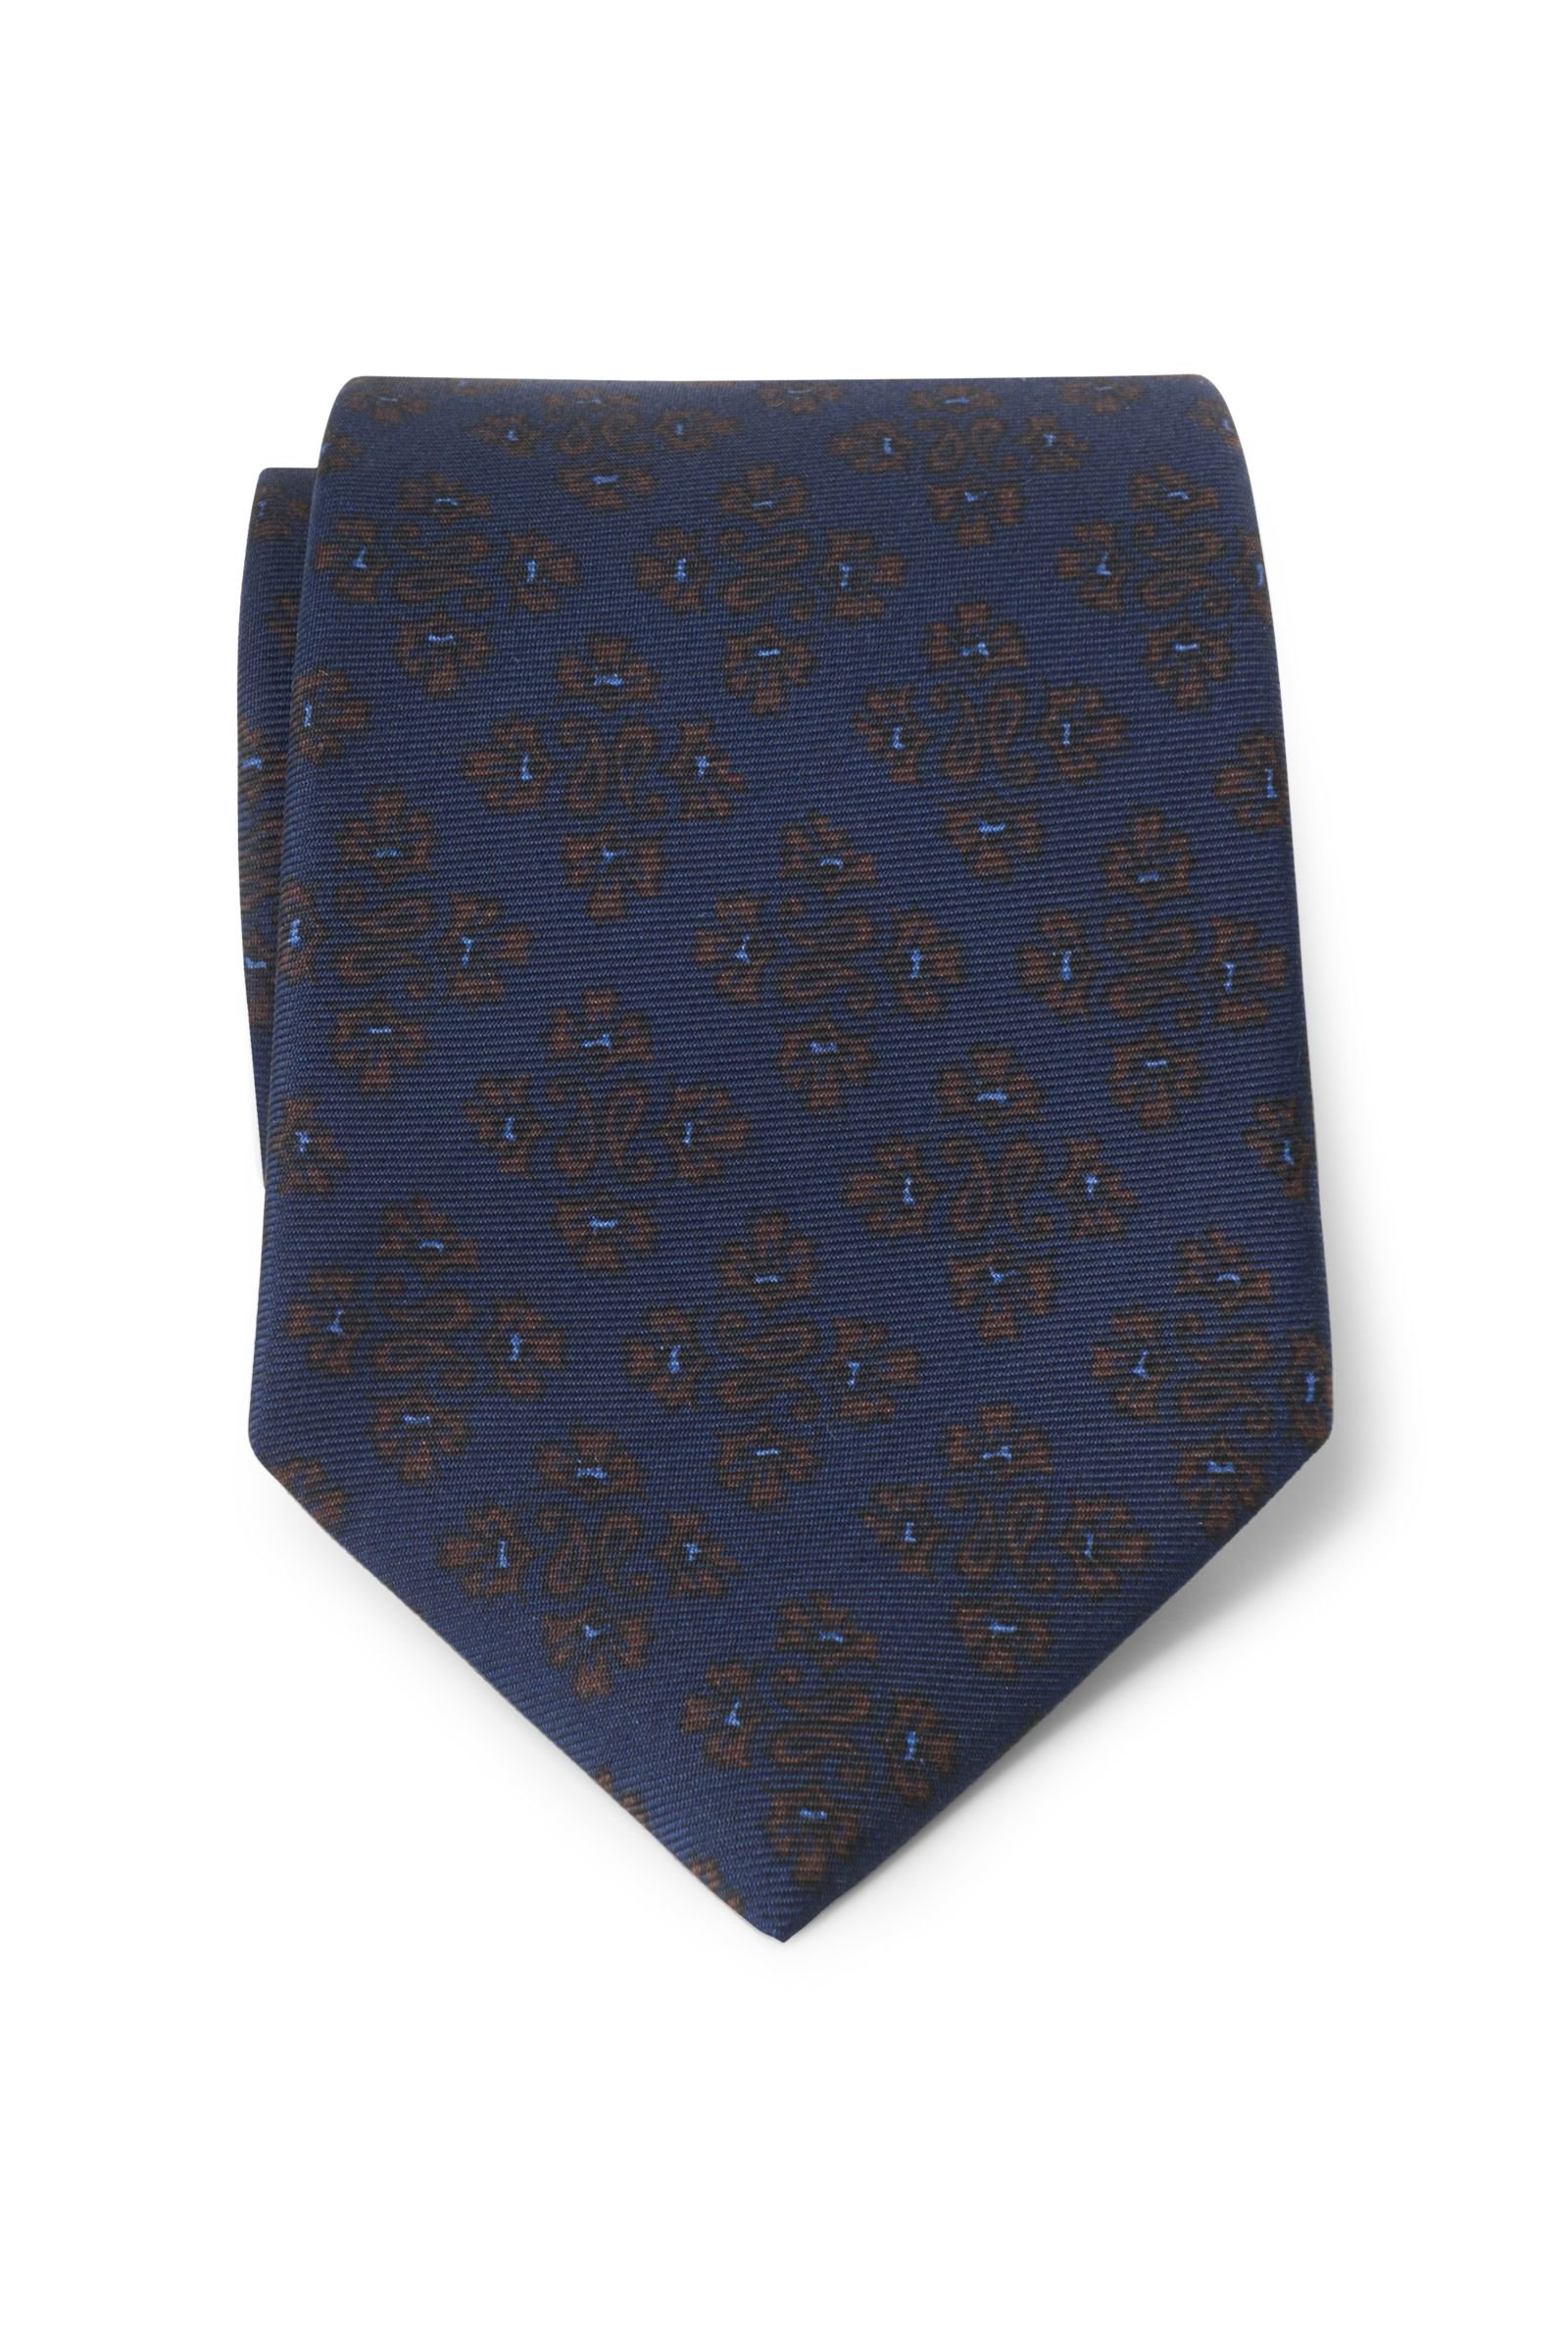 Silk tie dark navy/brown patterned